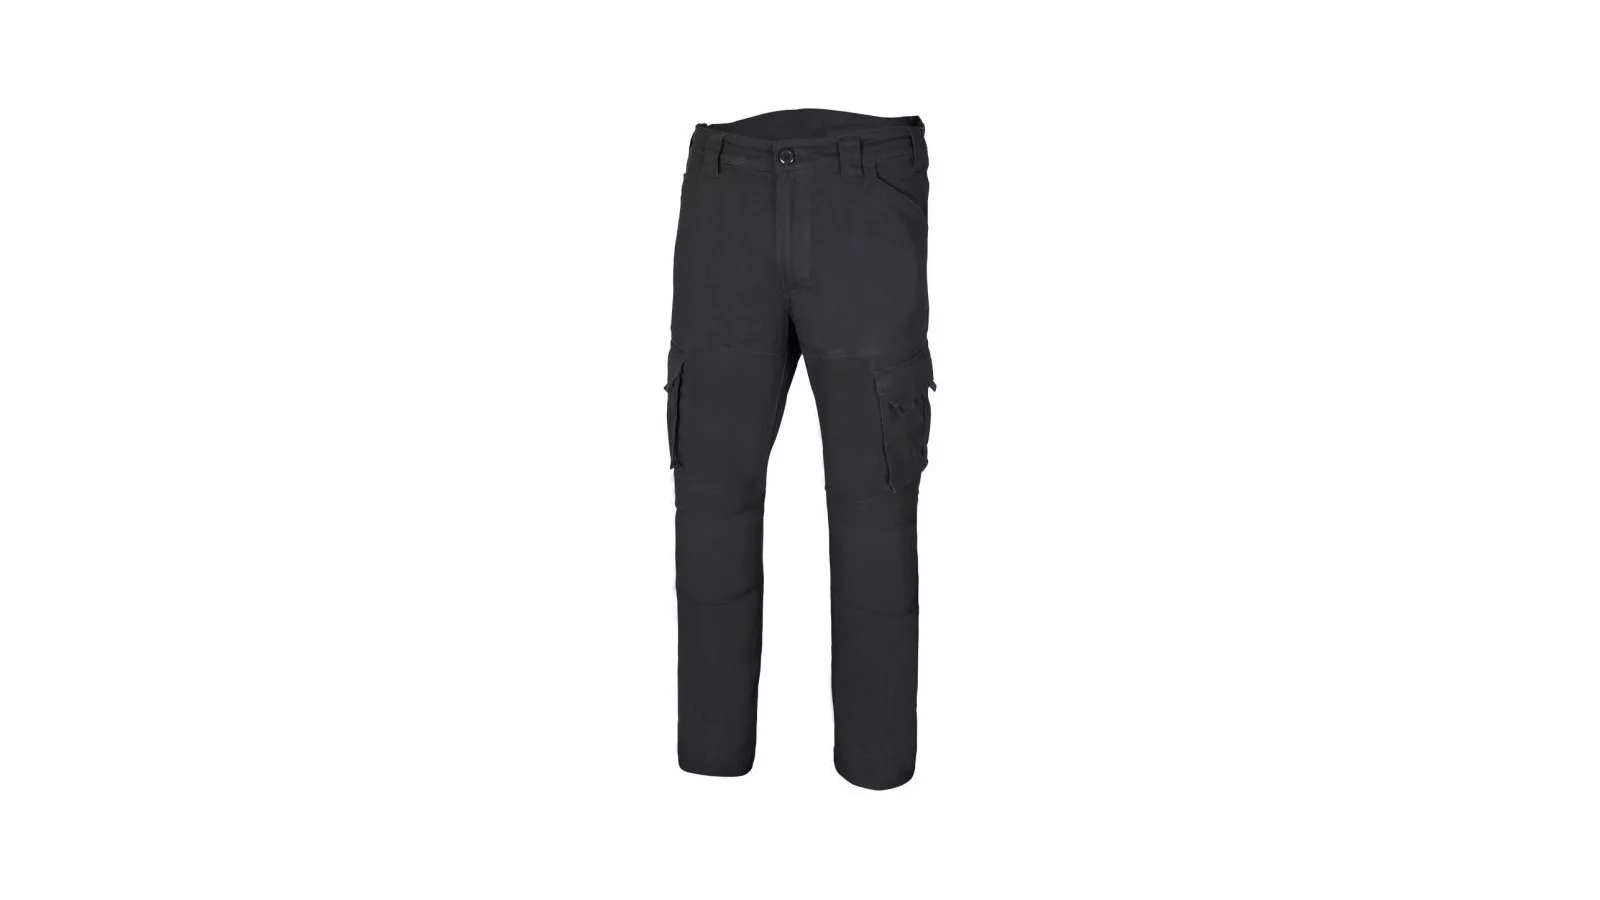 Pantalon coton Strech multipoches Noir 0